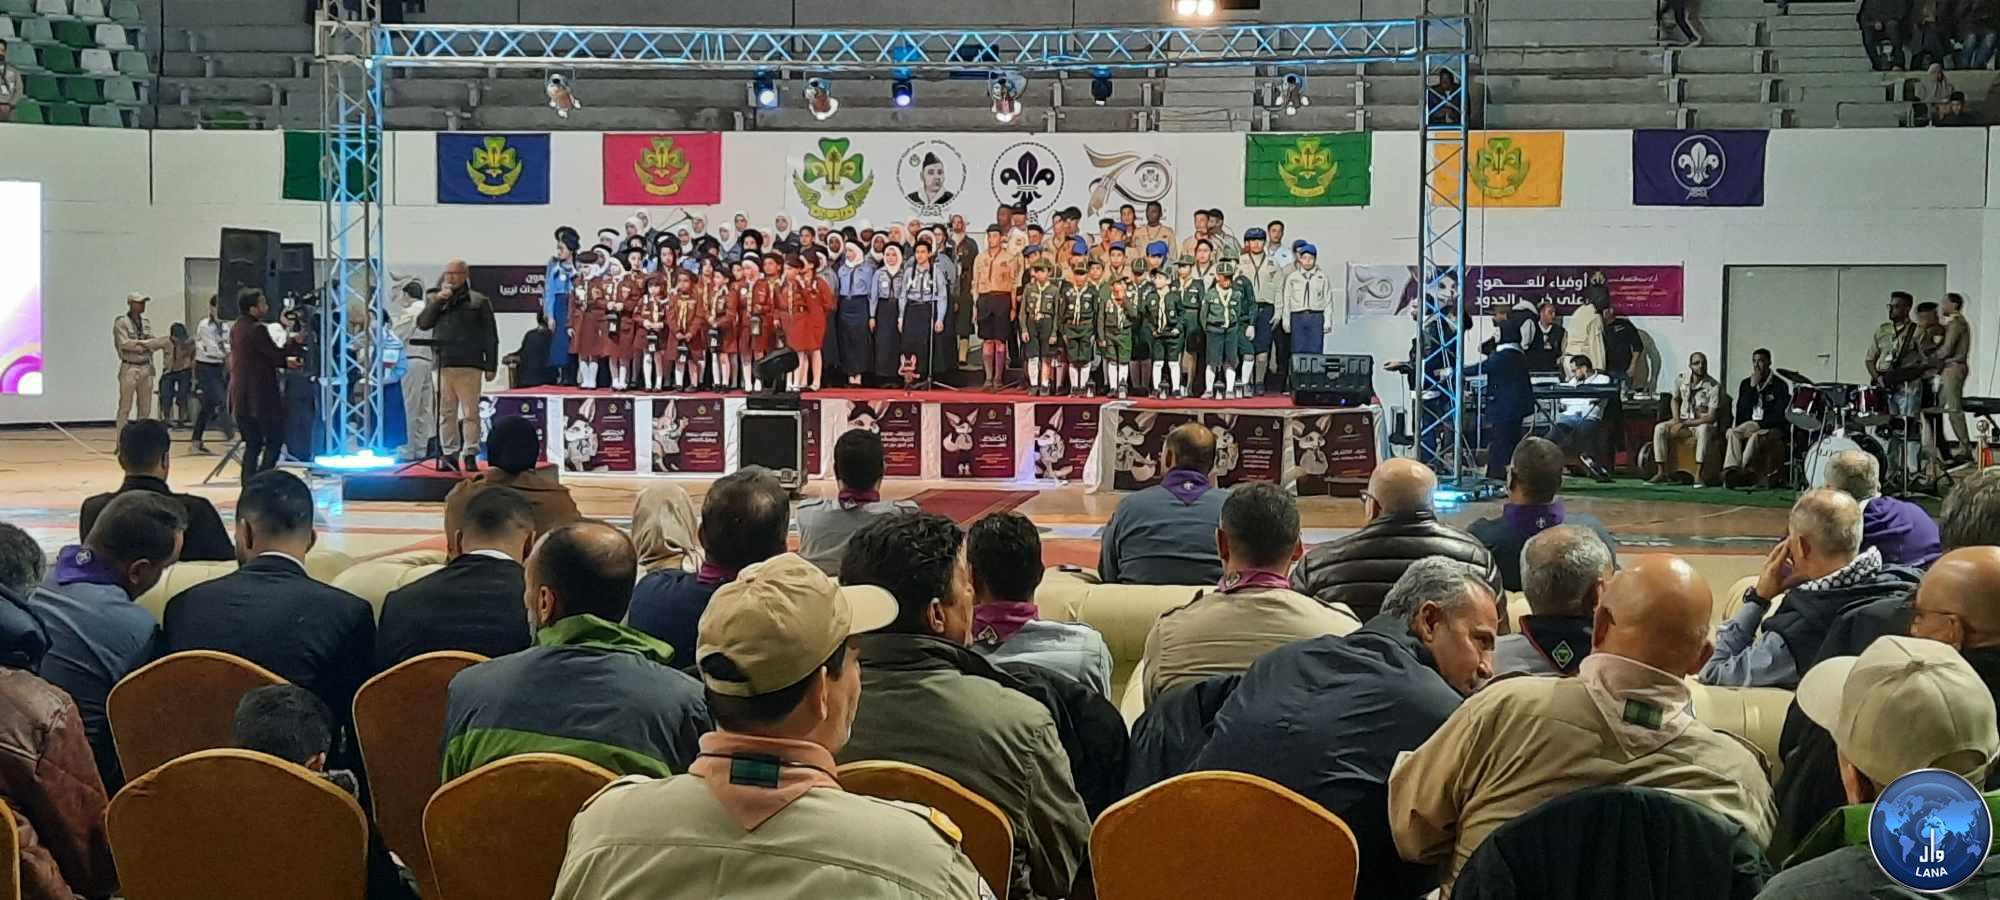 الحركة العامة للكشافة والمرشدات في طرابلس تحيي الذكرى 70 لتأسيس الحركة الكشفية.